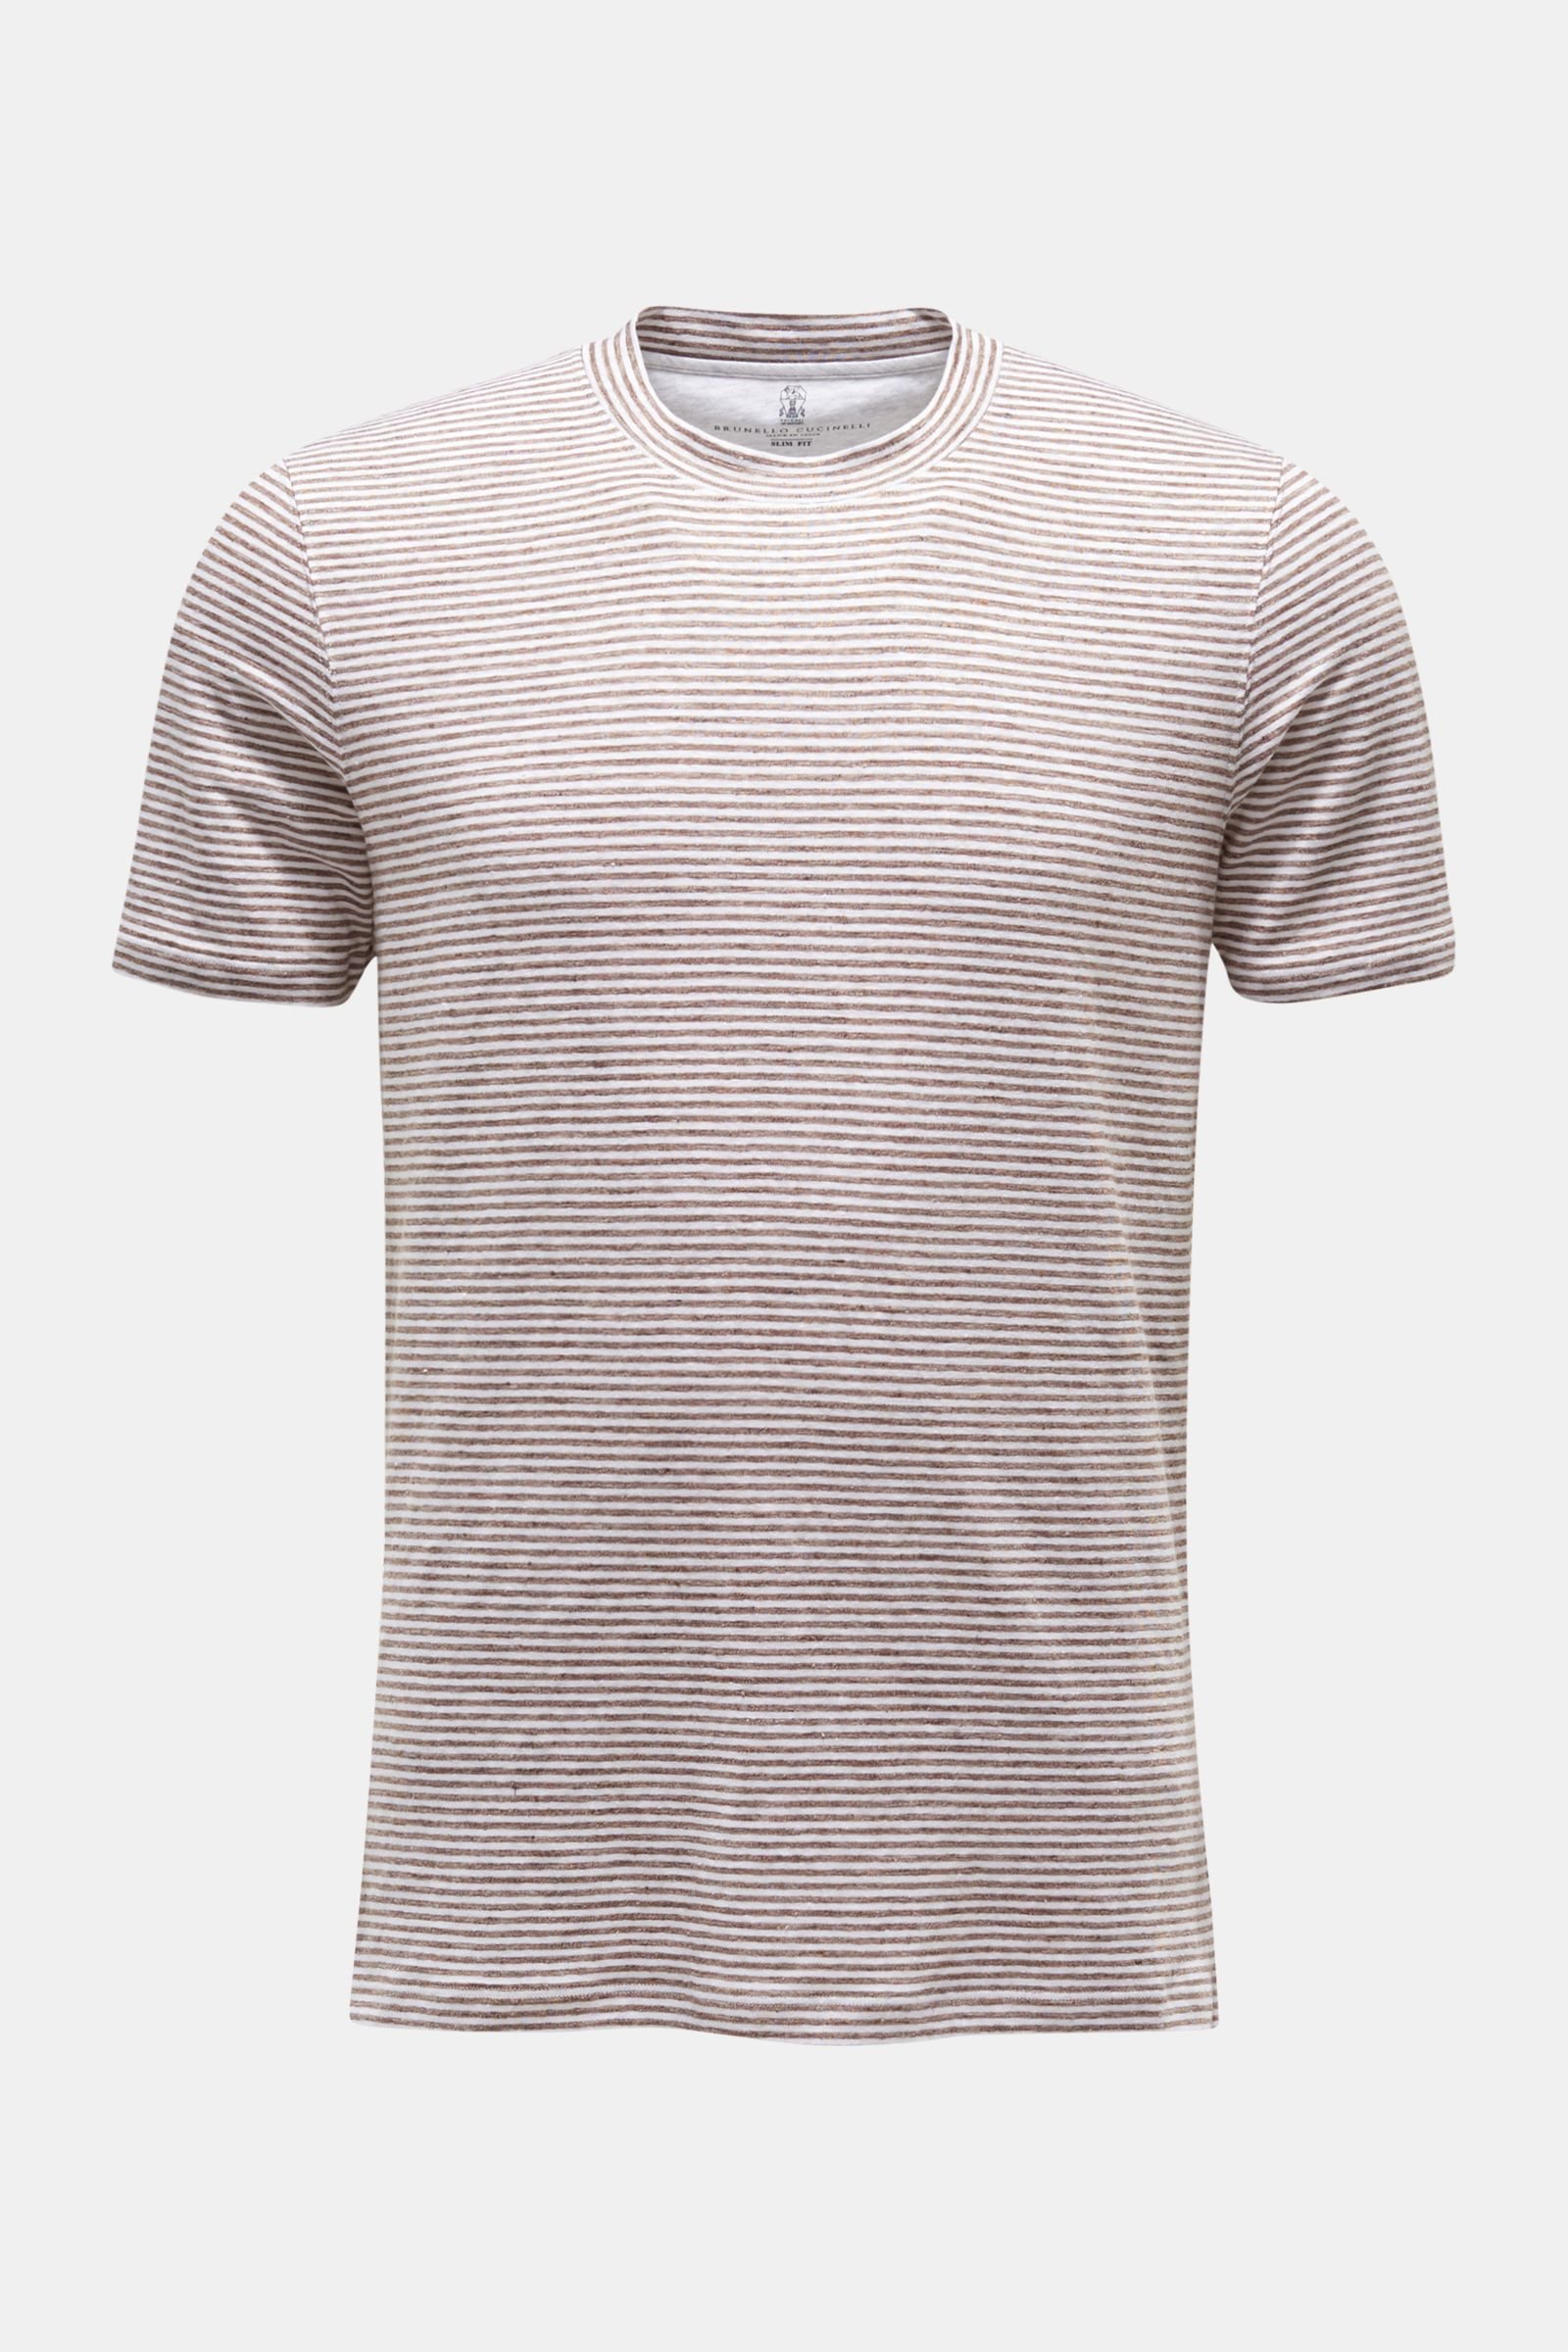 Leinen Rundhals-T-Shirt graubraun/weiß gestreift